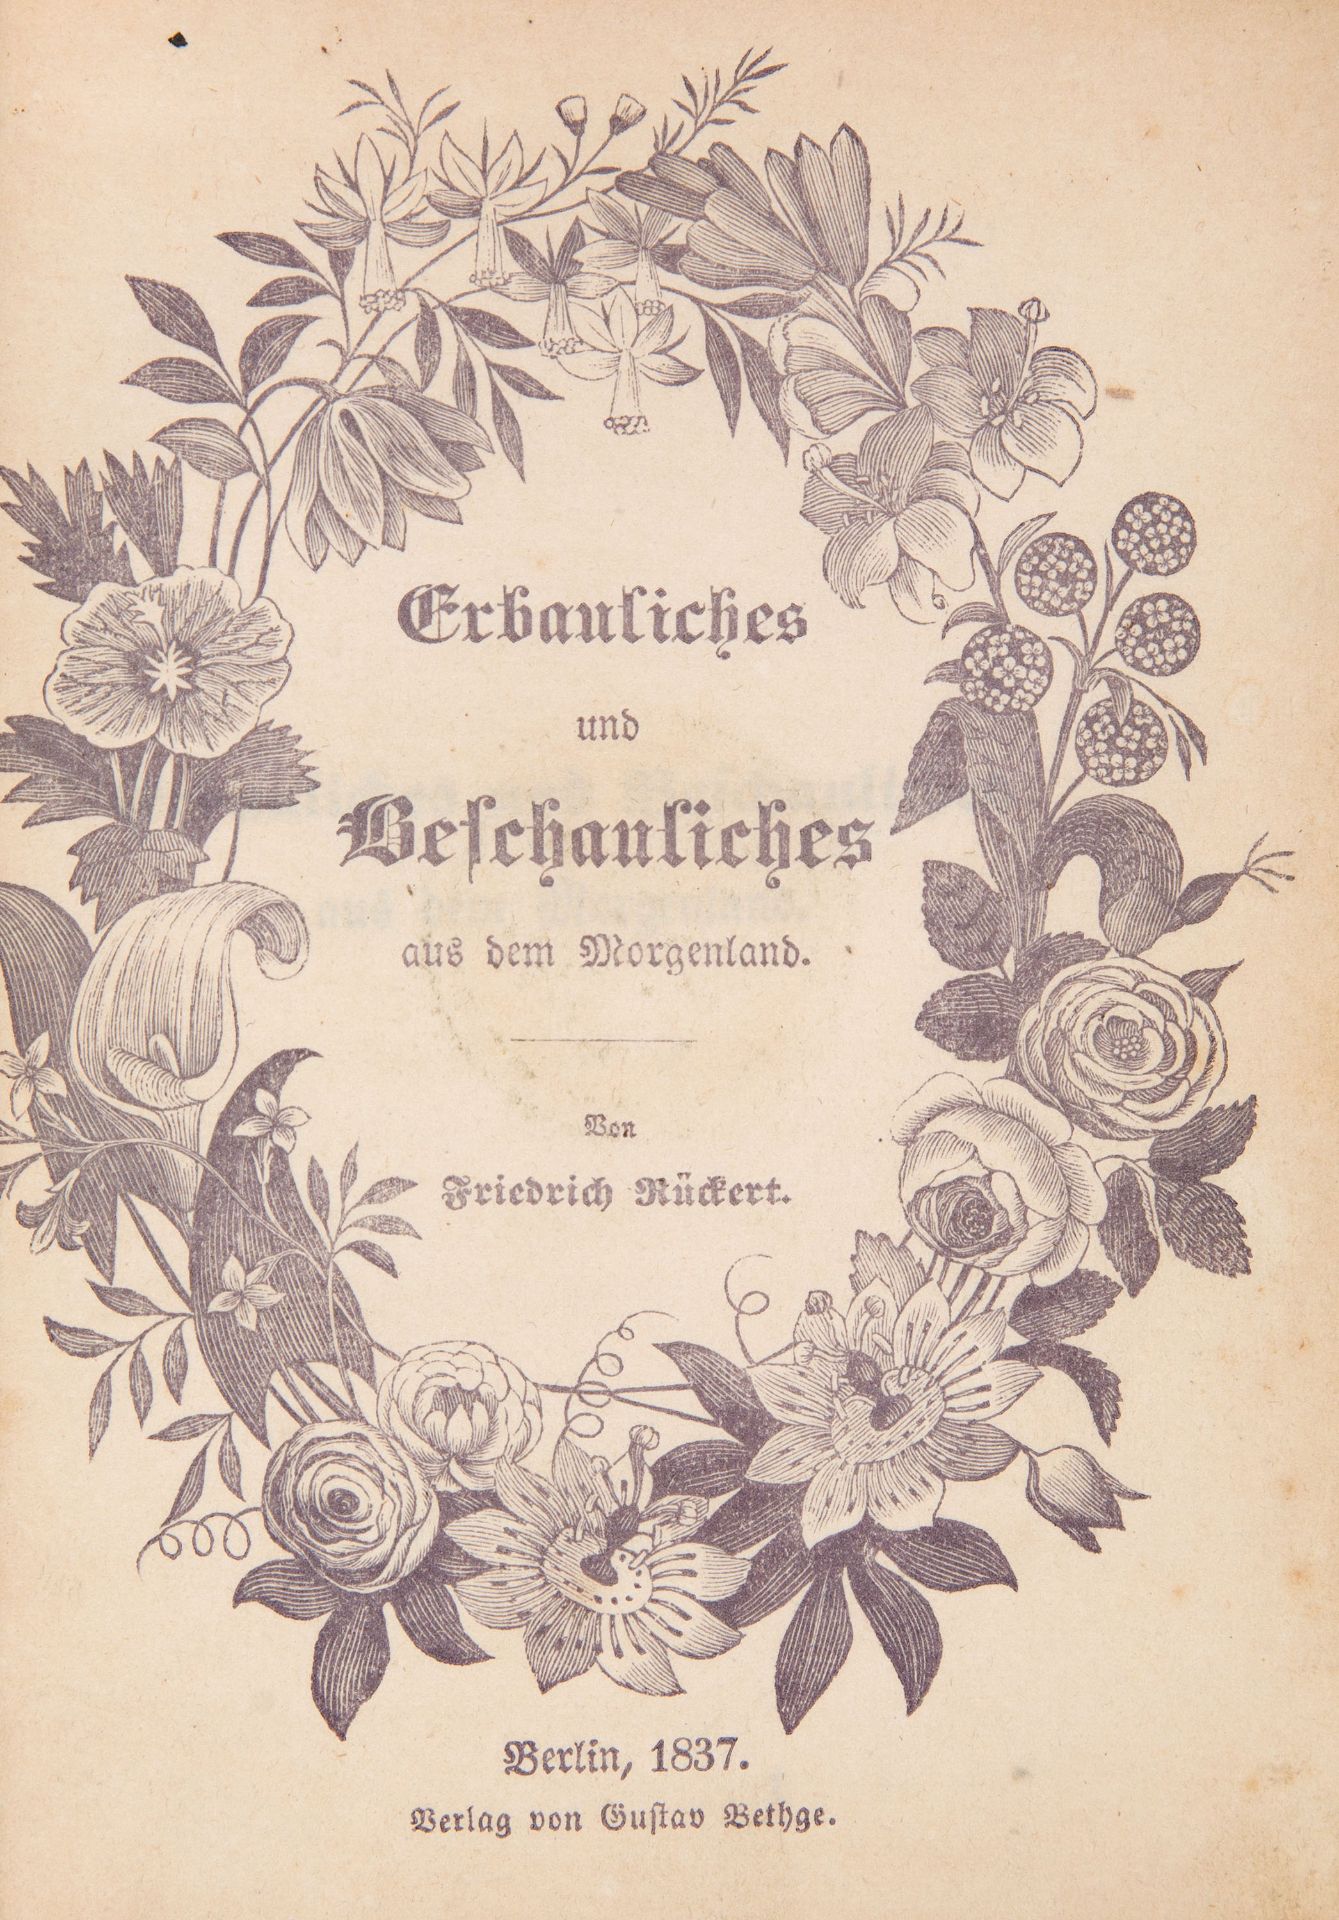 F. Rückert, Erbauliches und Beschauliches. Berlin 1837. - Widmung von Wilhelm Grimm an seine Schwest